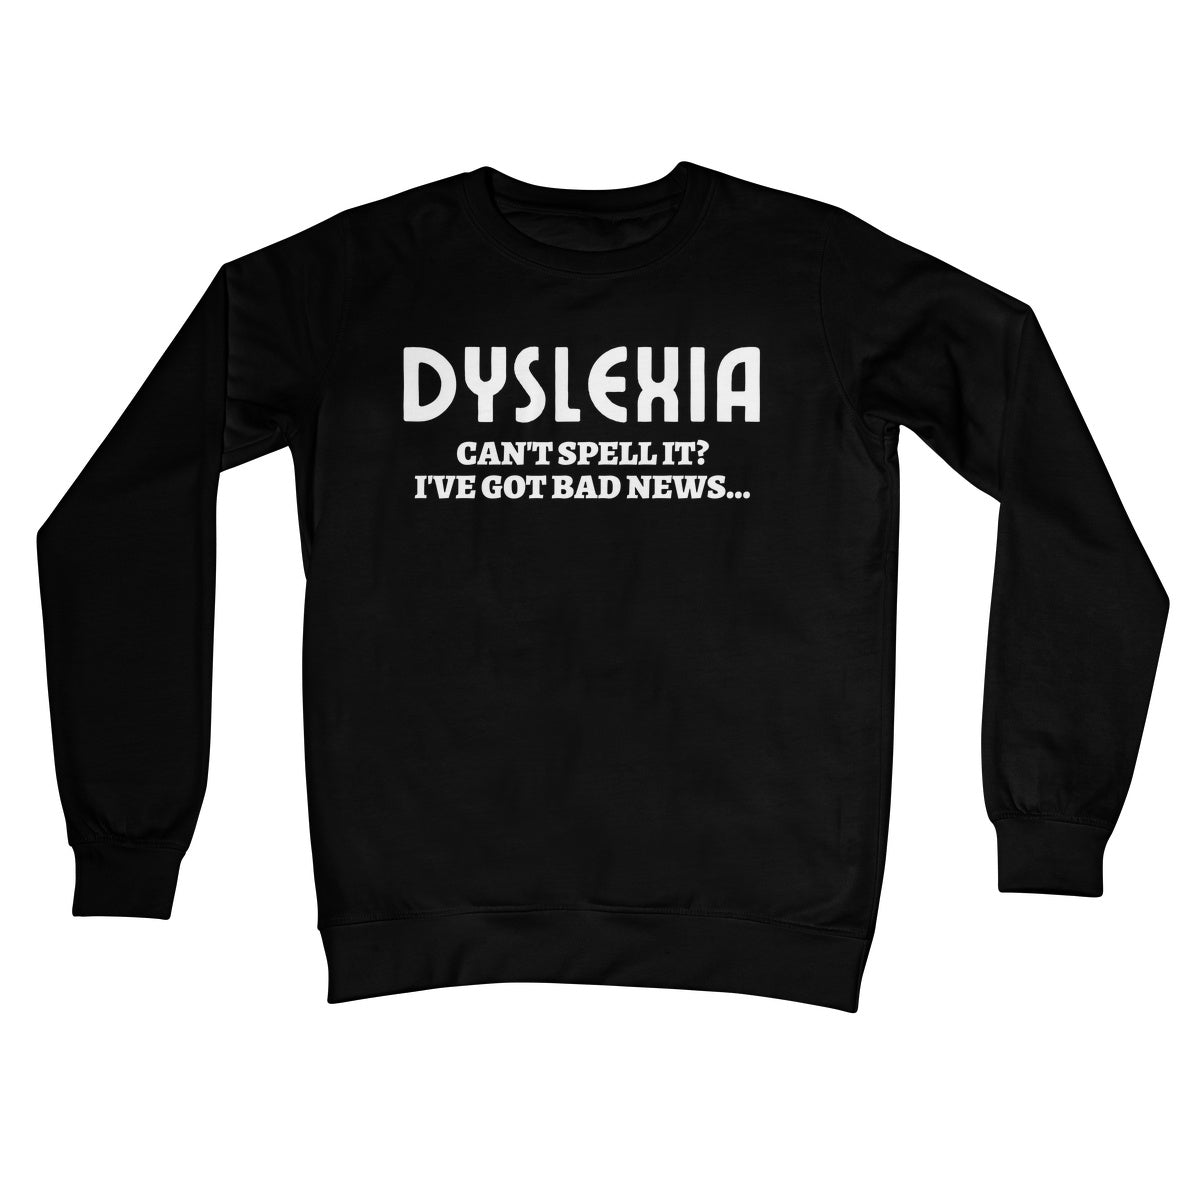 dyslexia jumper black